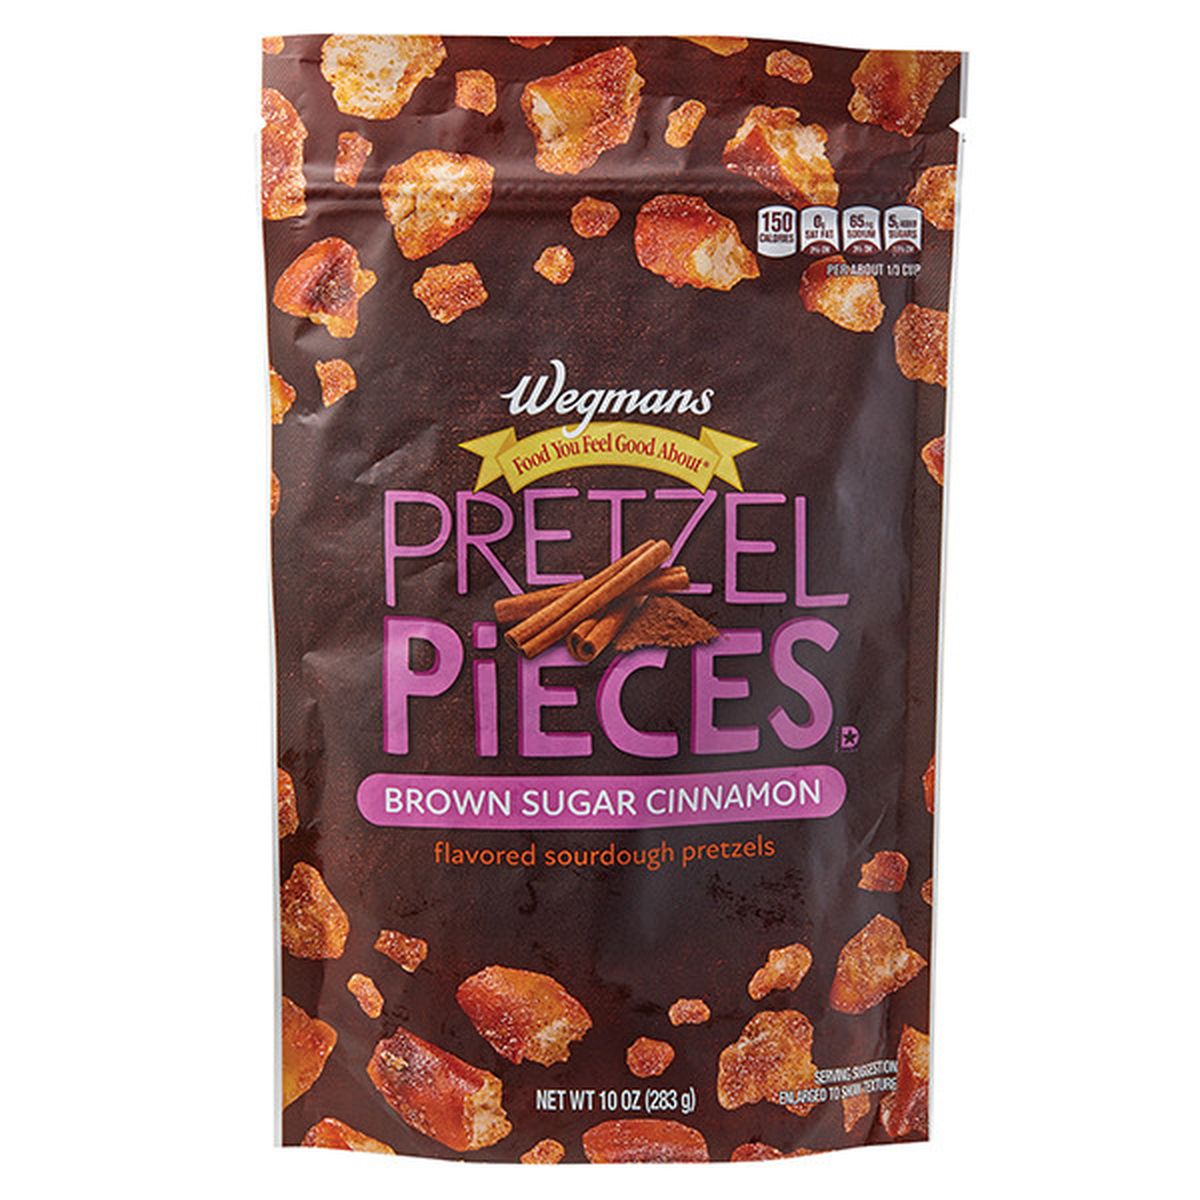 Calories in Wegmans Brown Sugar Cinnamon Pretzel Pieces